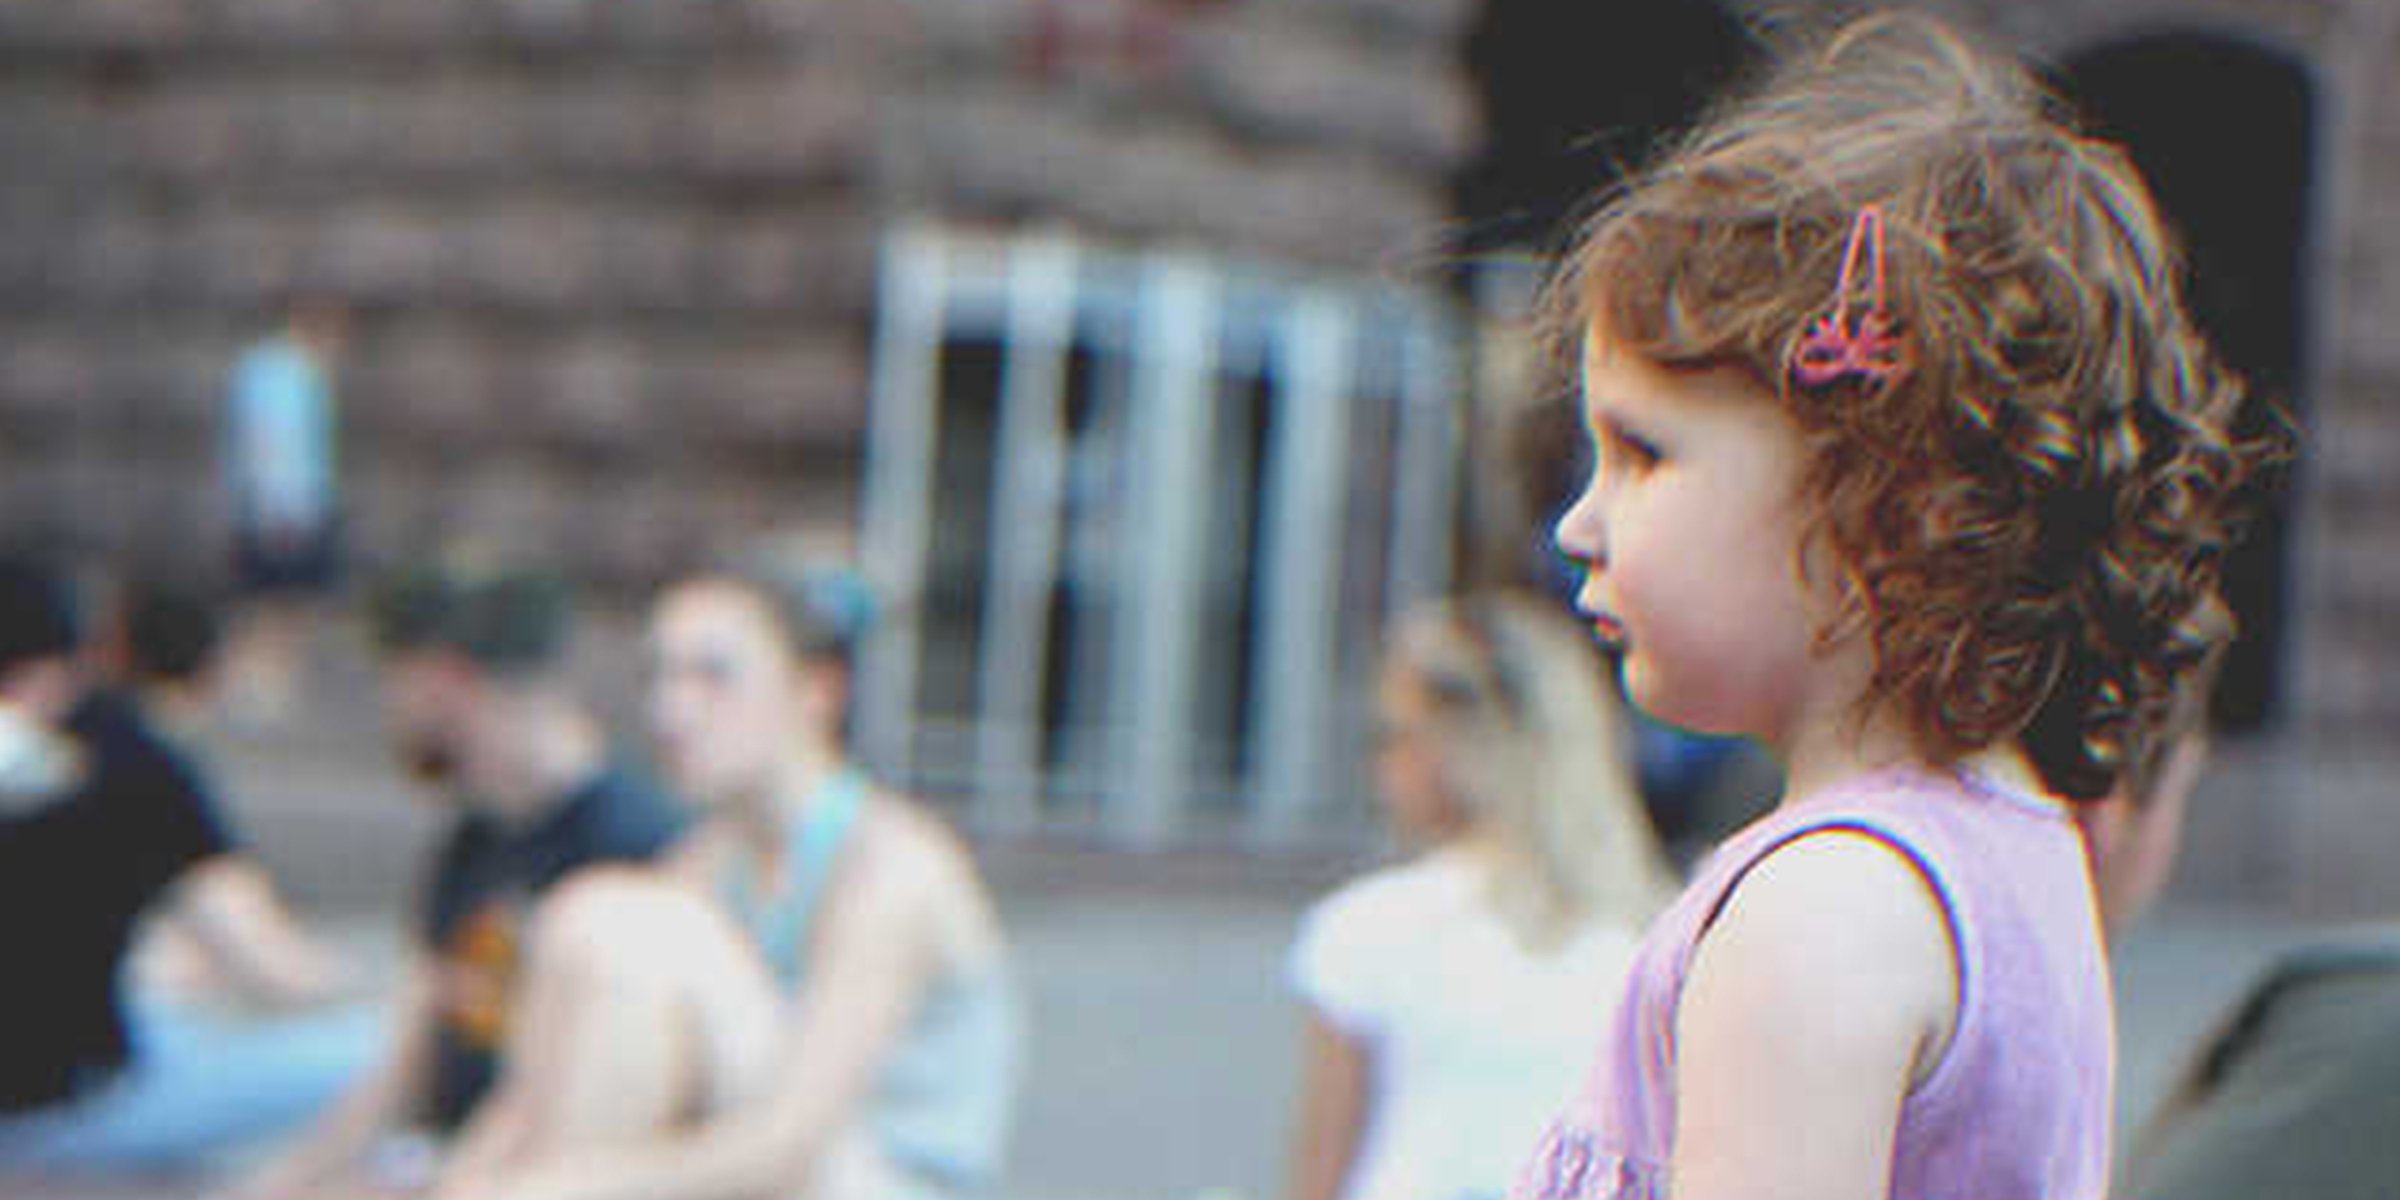 Kleines Mädchen | Quelle: Flickr/Roman Harak